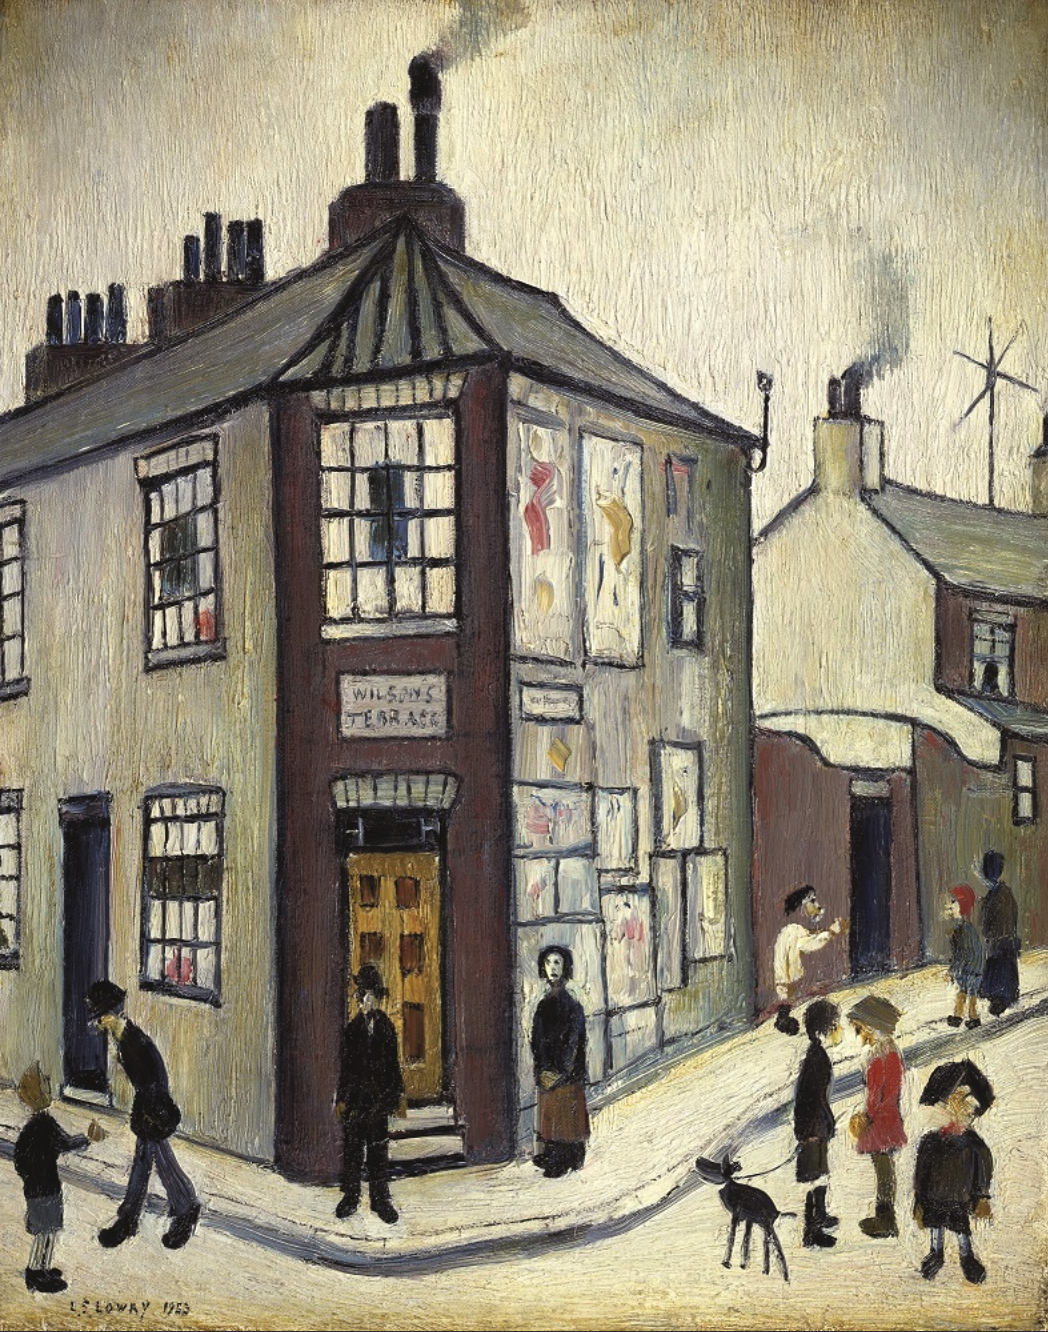 'Wilson's Terrace' (1953) by [L.S. Lowry](https://en.wikipedia.org/wiki/L._S._Lowry)